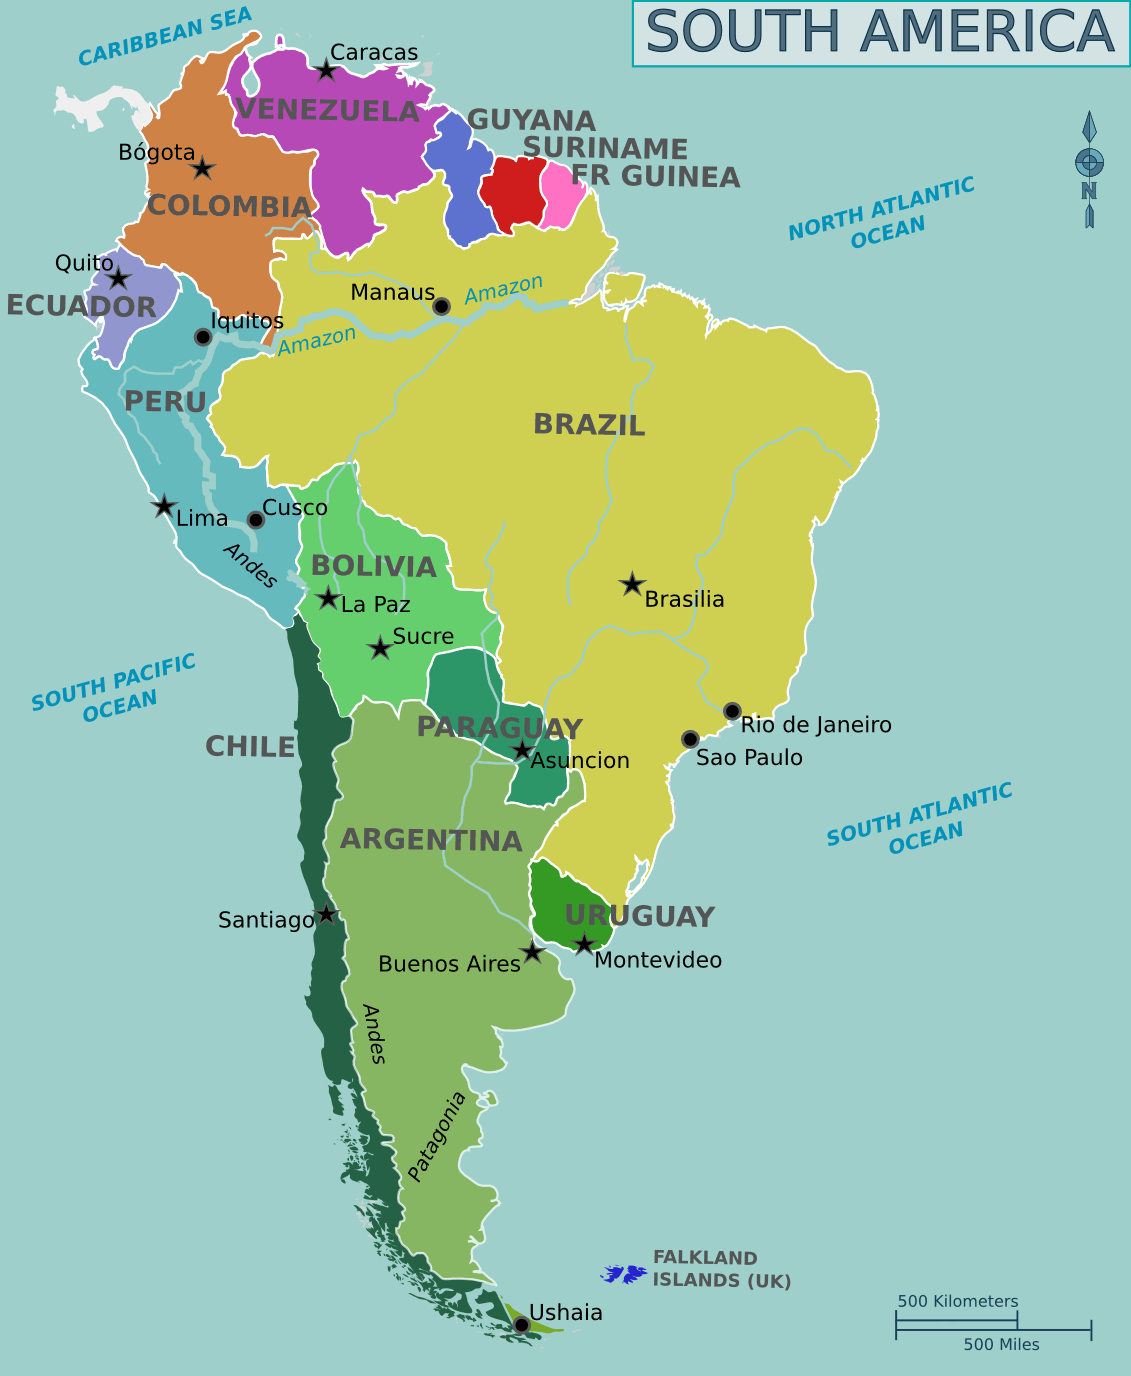 Mapa Político de Sudamérica - Tamaño completo | Gifex